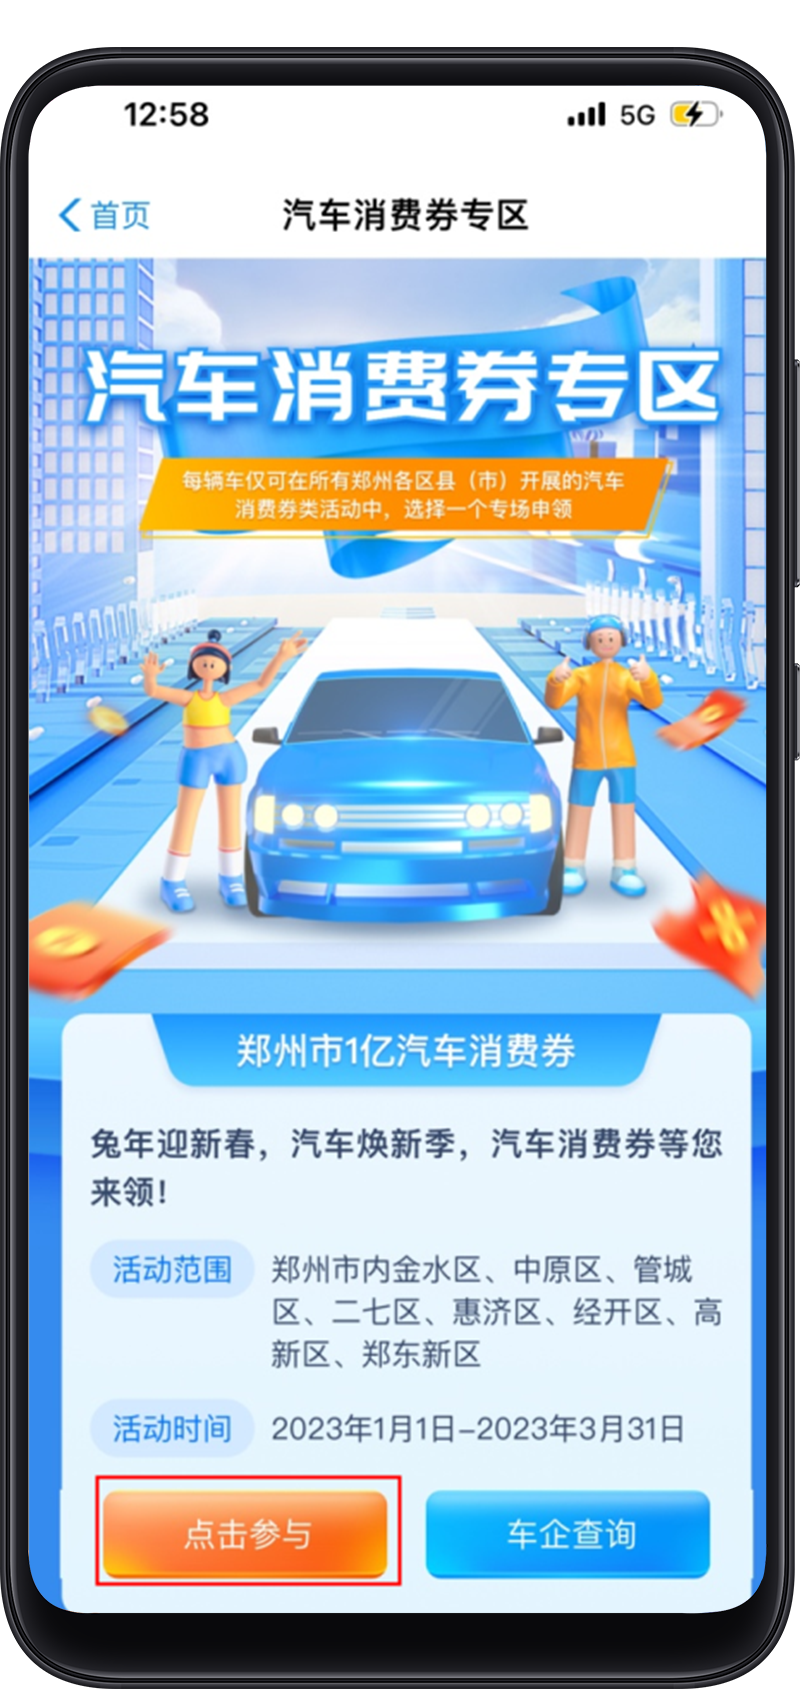 开抢！郑州增发1亿元汽车消费券